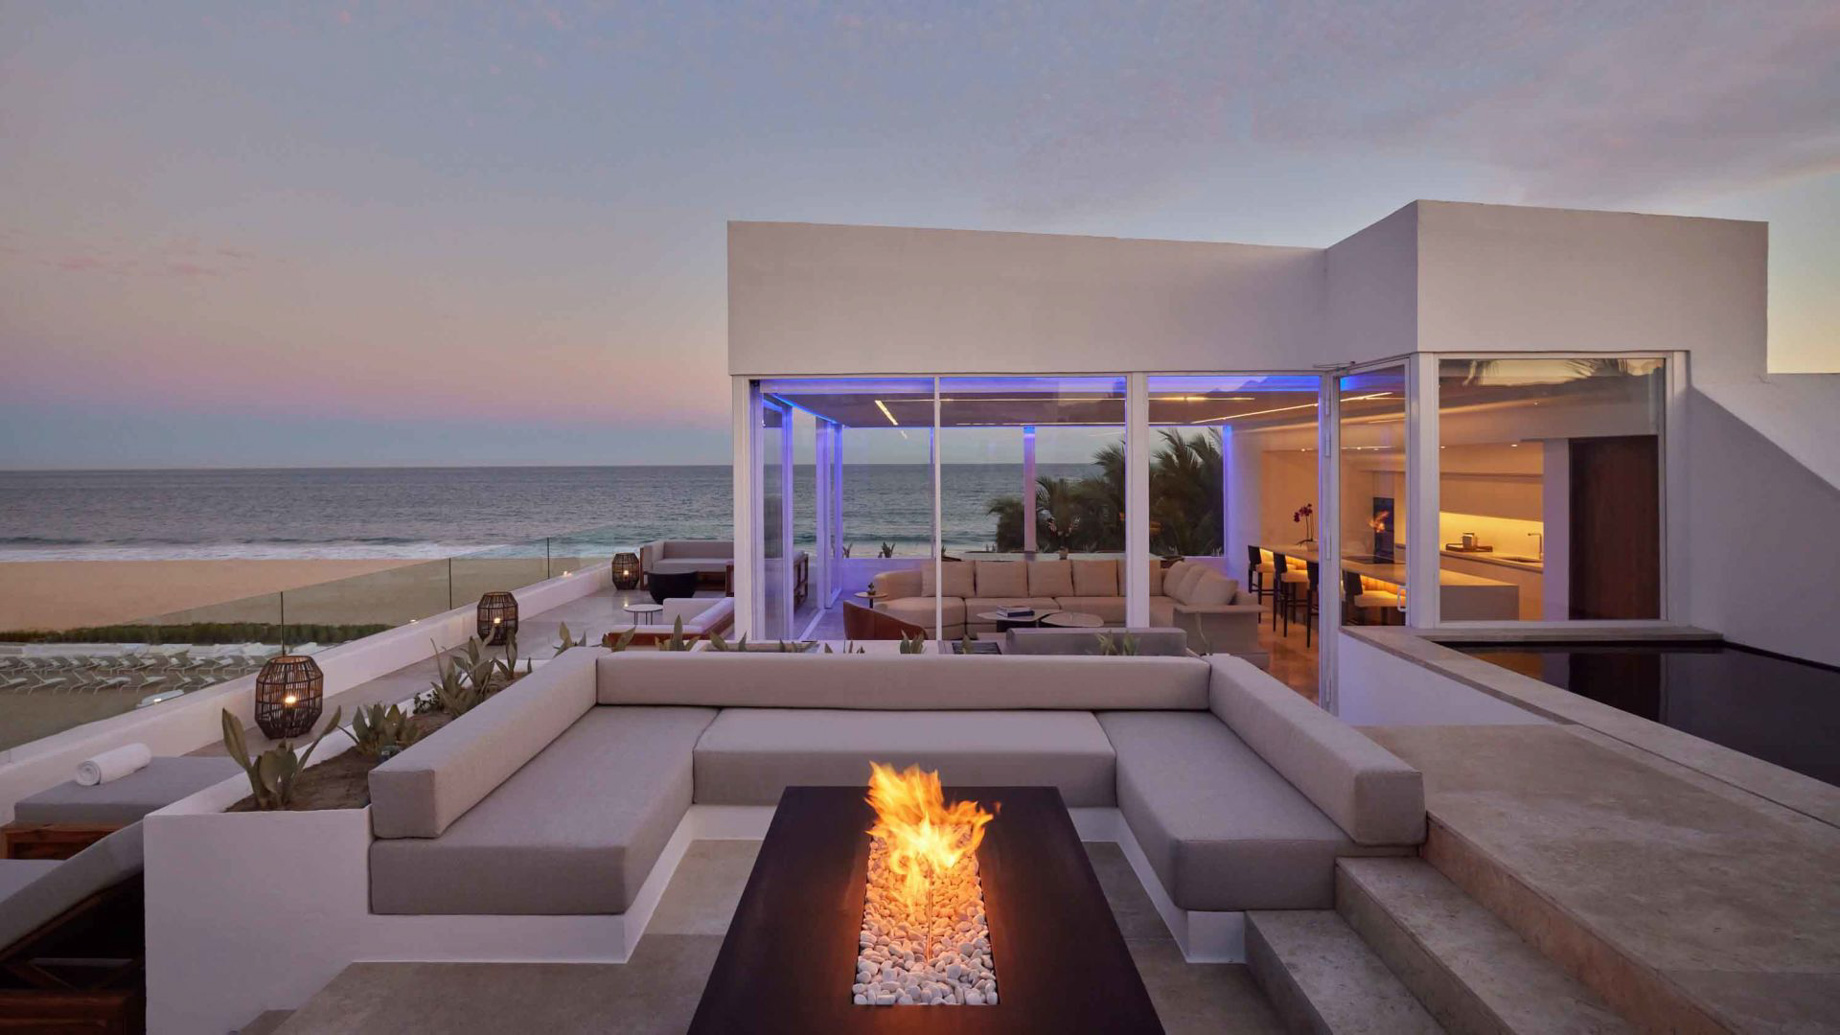 Viceroy Los Cabos Resort - San José del Cabo, Mexico - Three Bedroom Ocean Front Suite Rooftop Deck